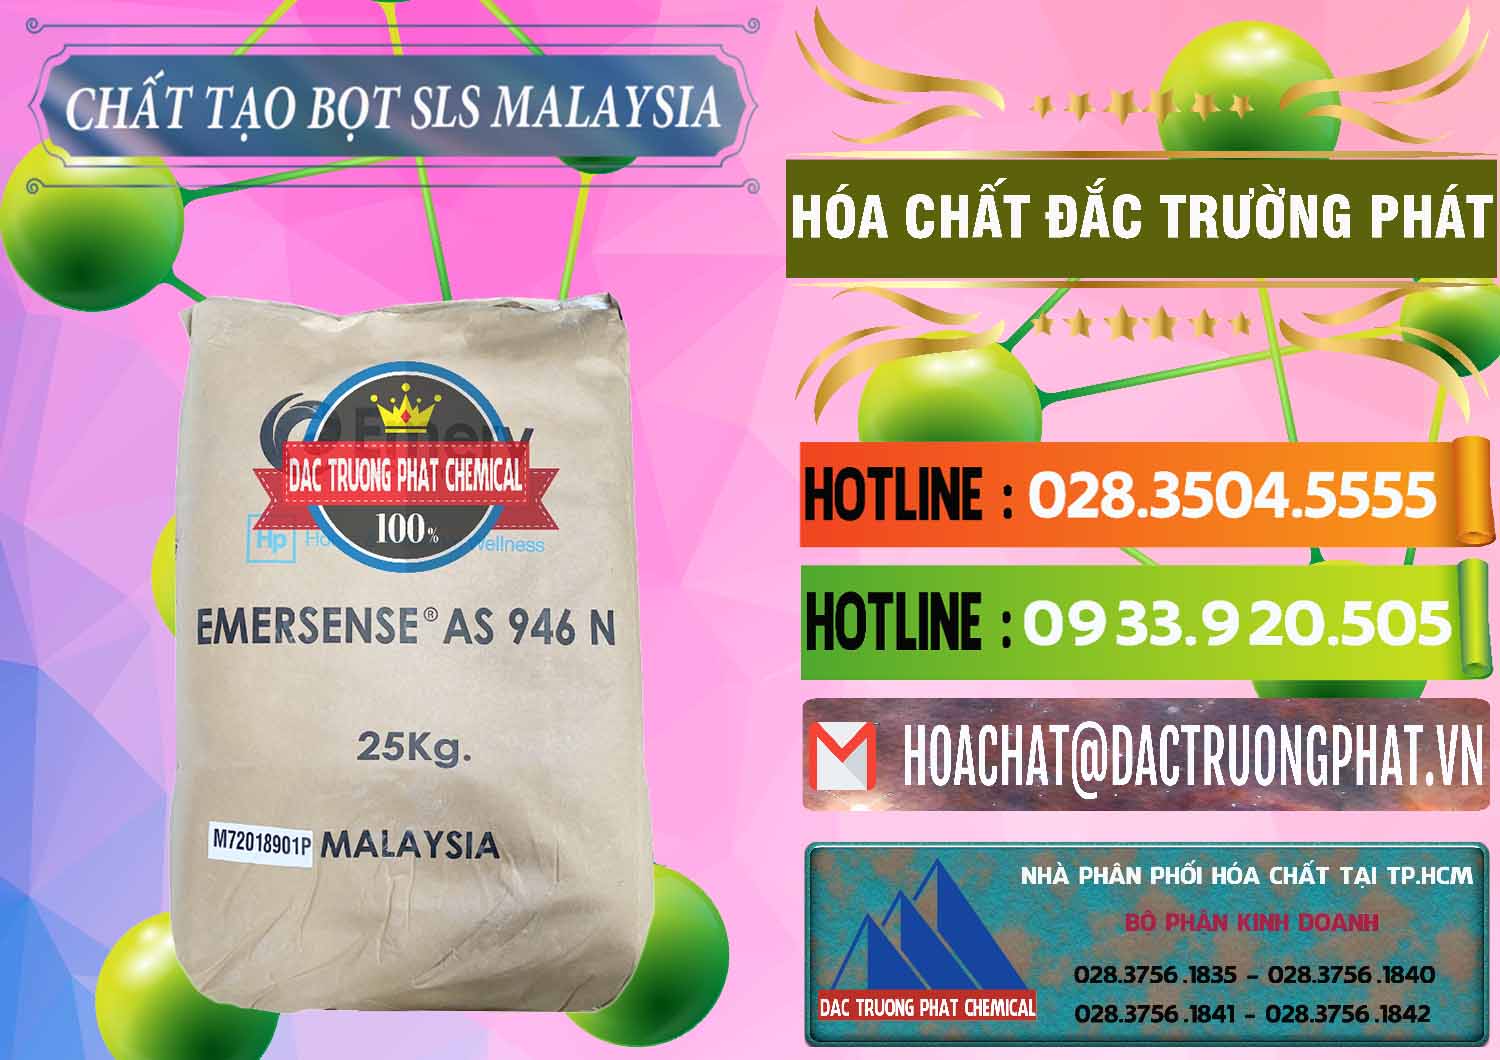 Bán Chất Tạo Bọt SLS Emery - Emersense AS 946N Mã Lai Malaysia - 0423 - Cty cung cấp - nhập khẩu hóa chất tại TP.HCM - cungcaphoachat.com.vn